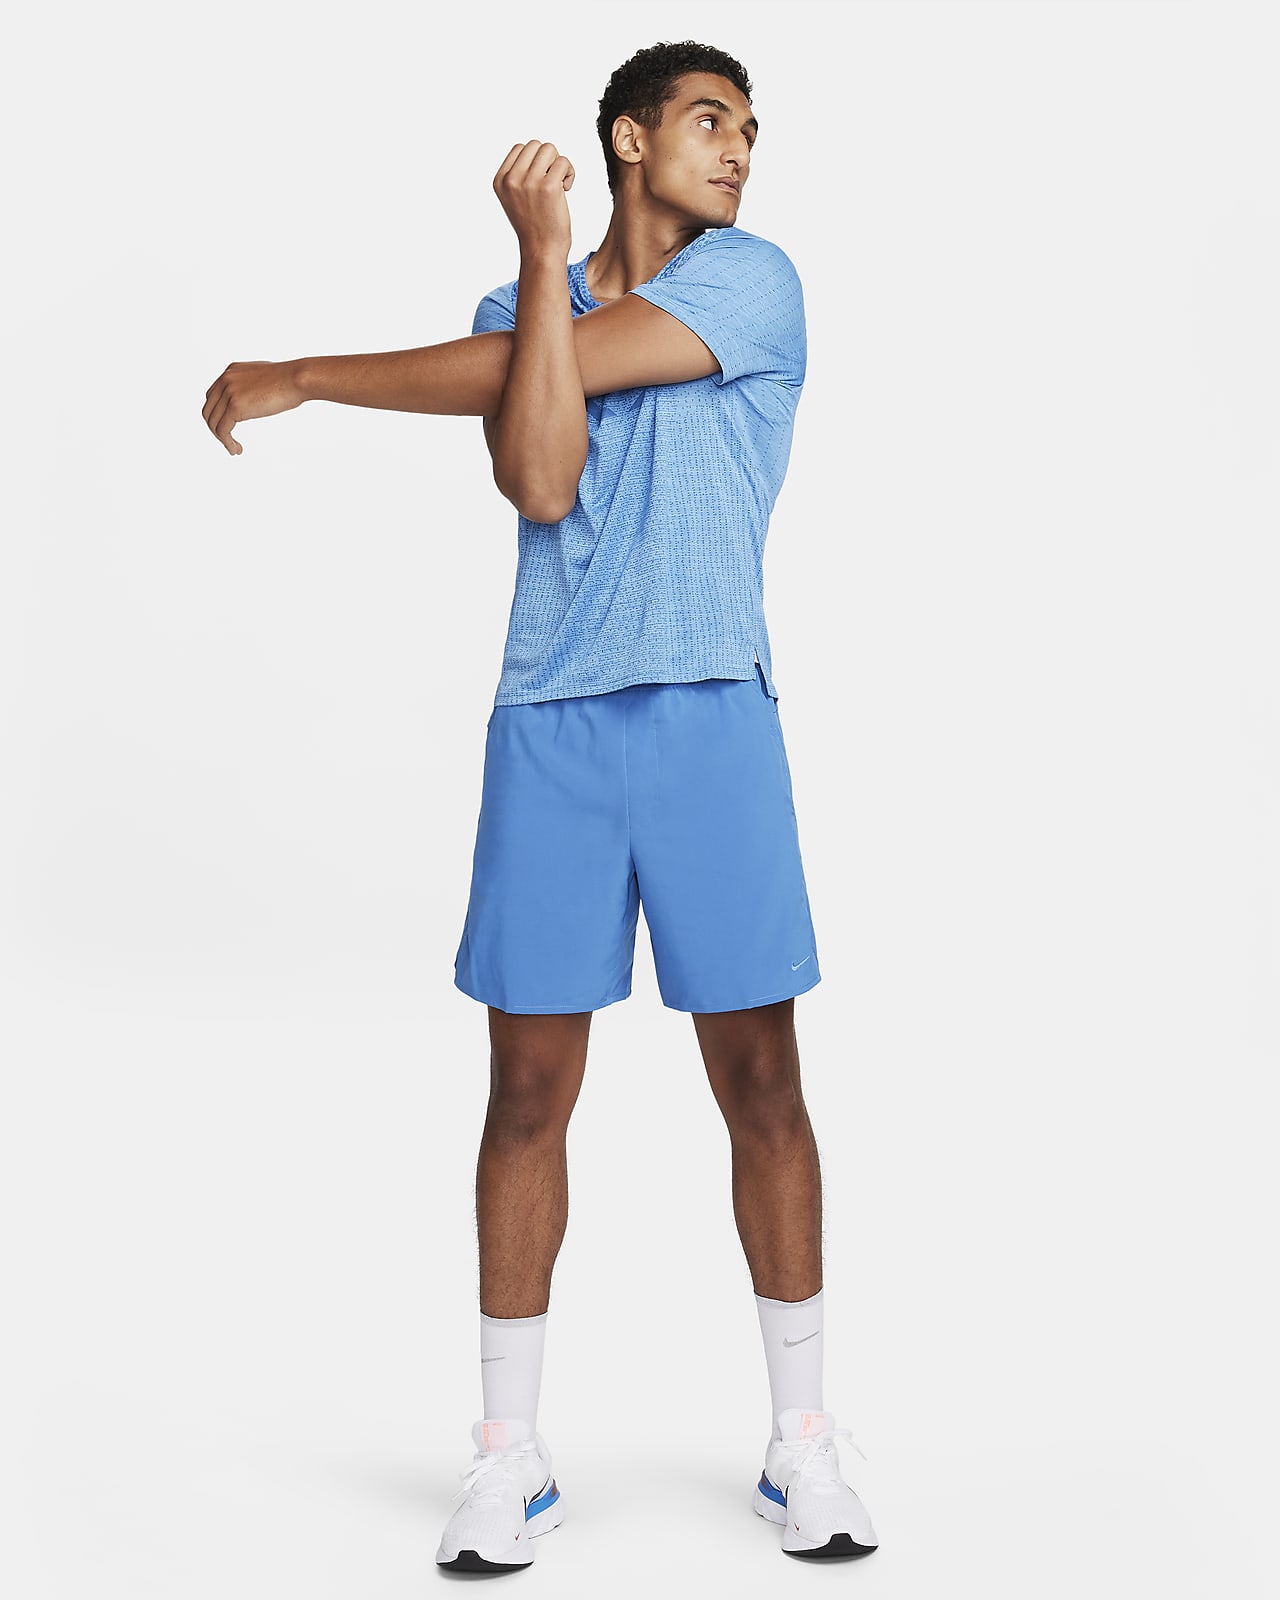 Shorts de Basket pour Homme. Nike LU